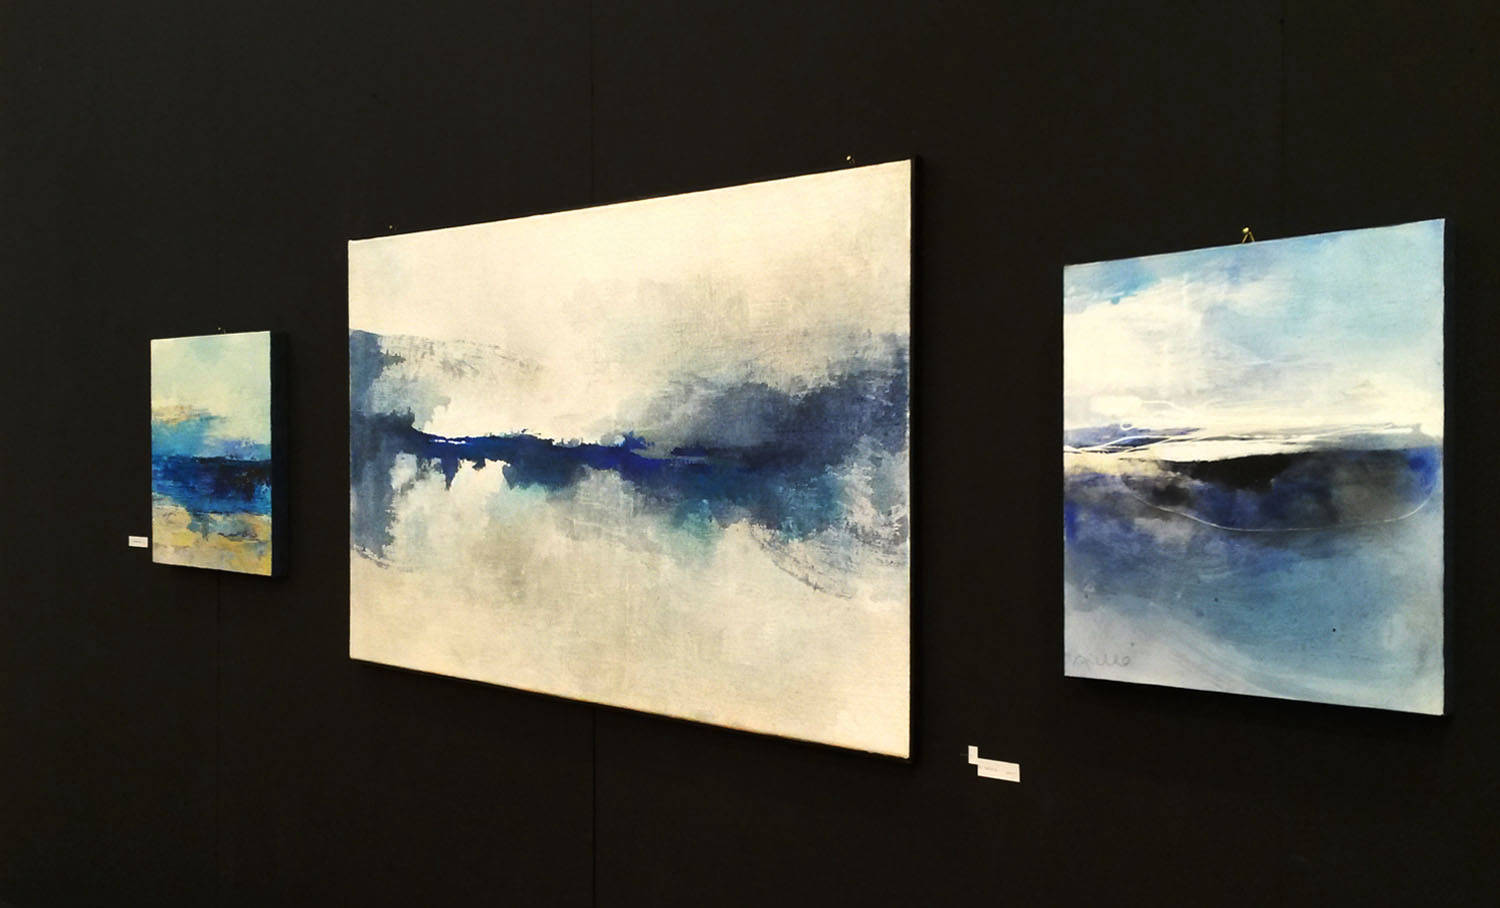 guardando il cielo, The exhibits of Sergio Aiello contemporary visual artist of Abstract Contemporary Landscape Paintings at https://www.sergioaiello.com